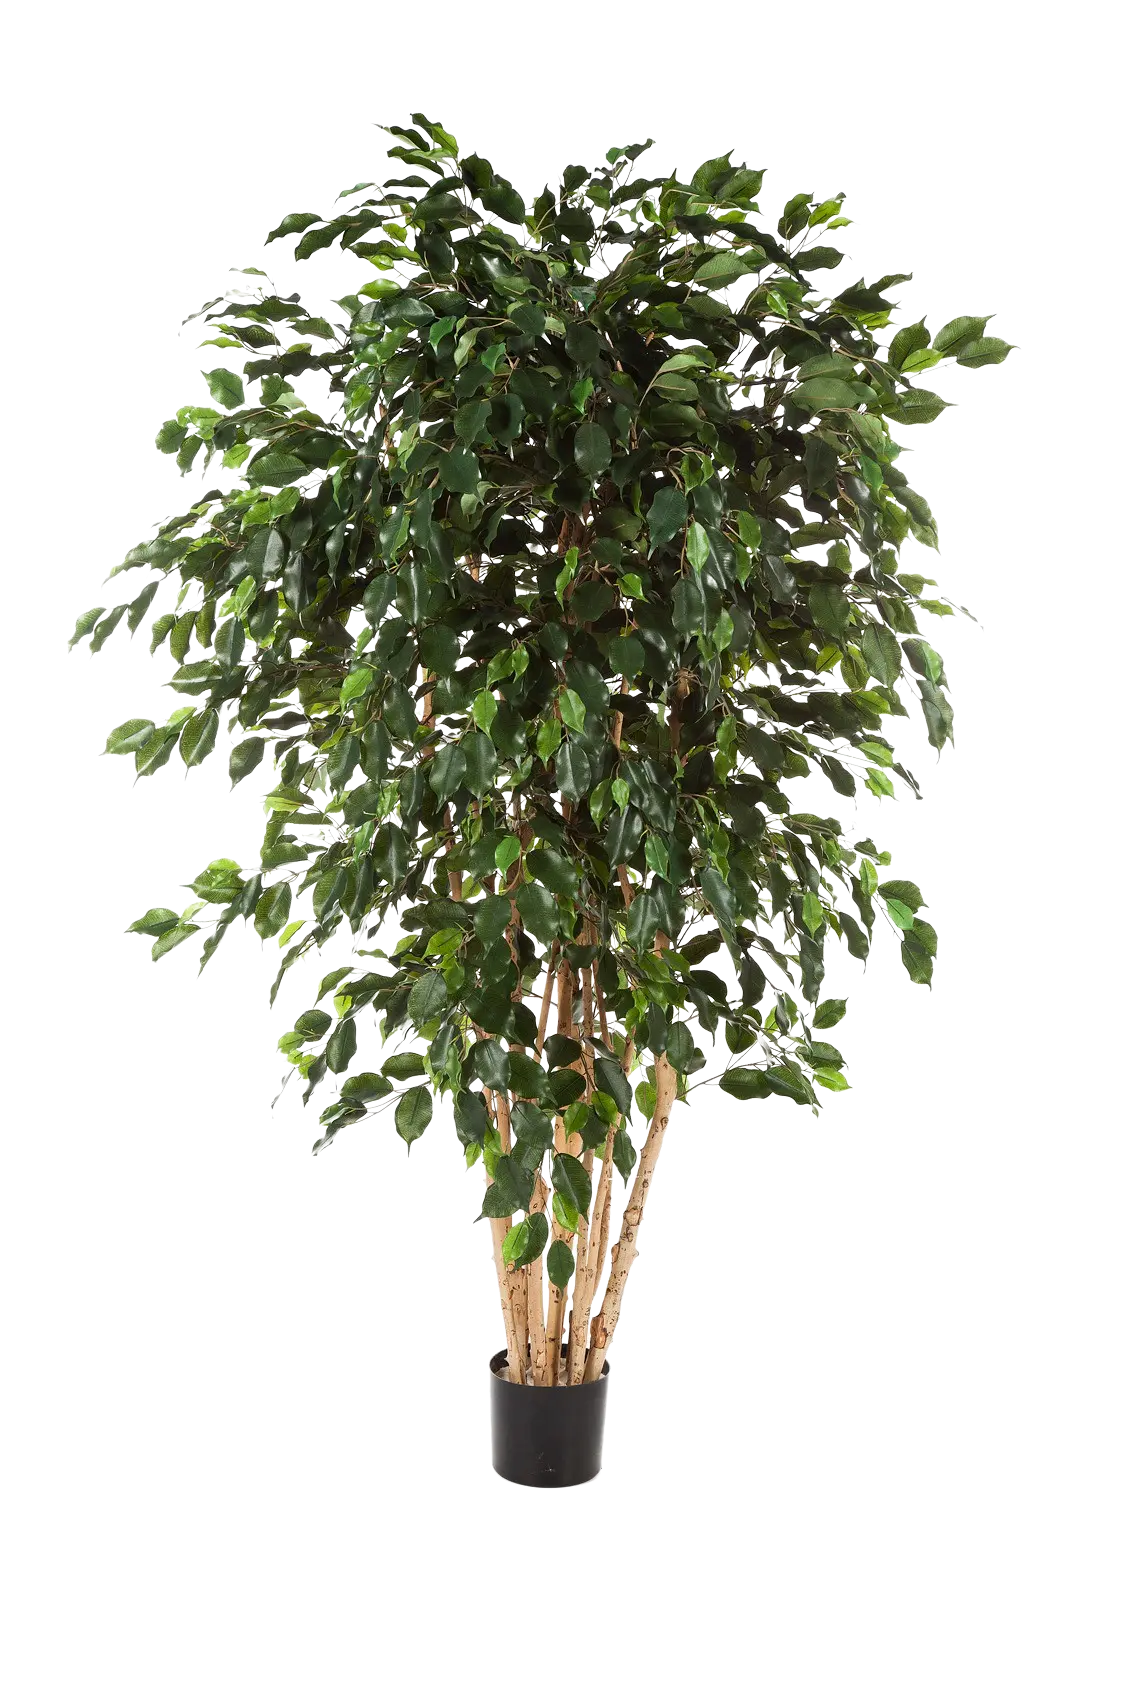 Künstlicher Gummibaum - Joel auf transparentem Hintergrund mit echt wirkenden Kunstblättern. Diese Kunstpflanze gehört zur Gattung/Familie der "Feigen" bzw. "Kunst-Feigen".